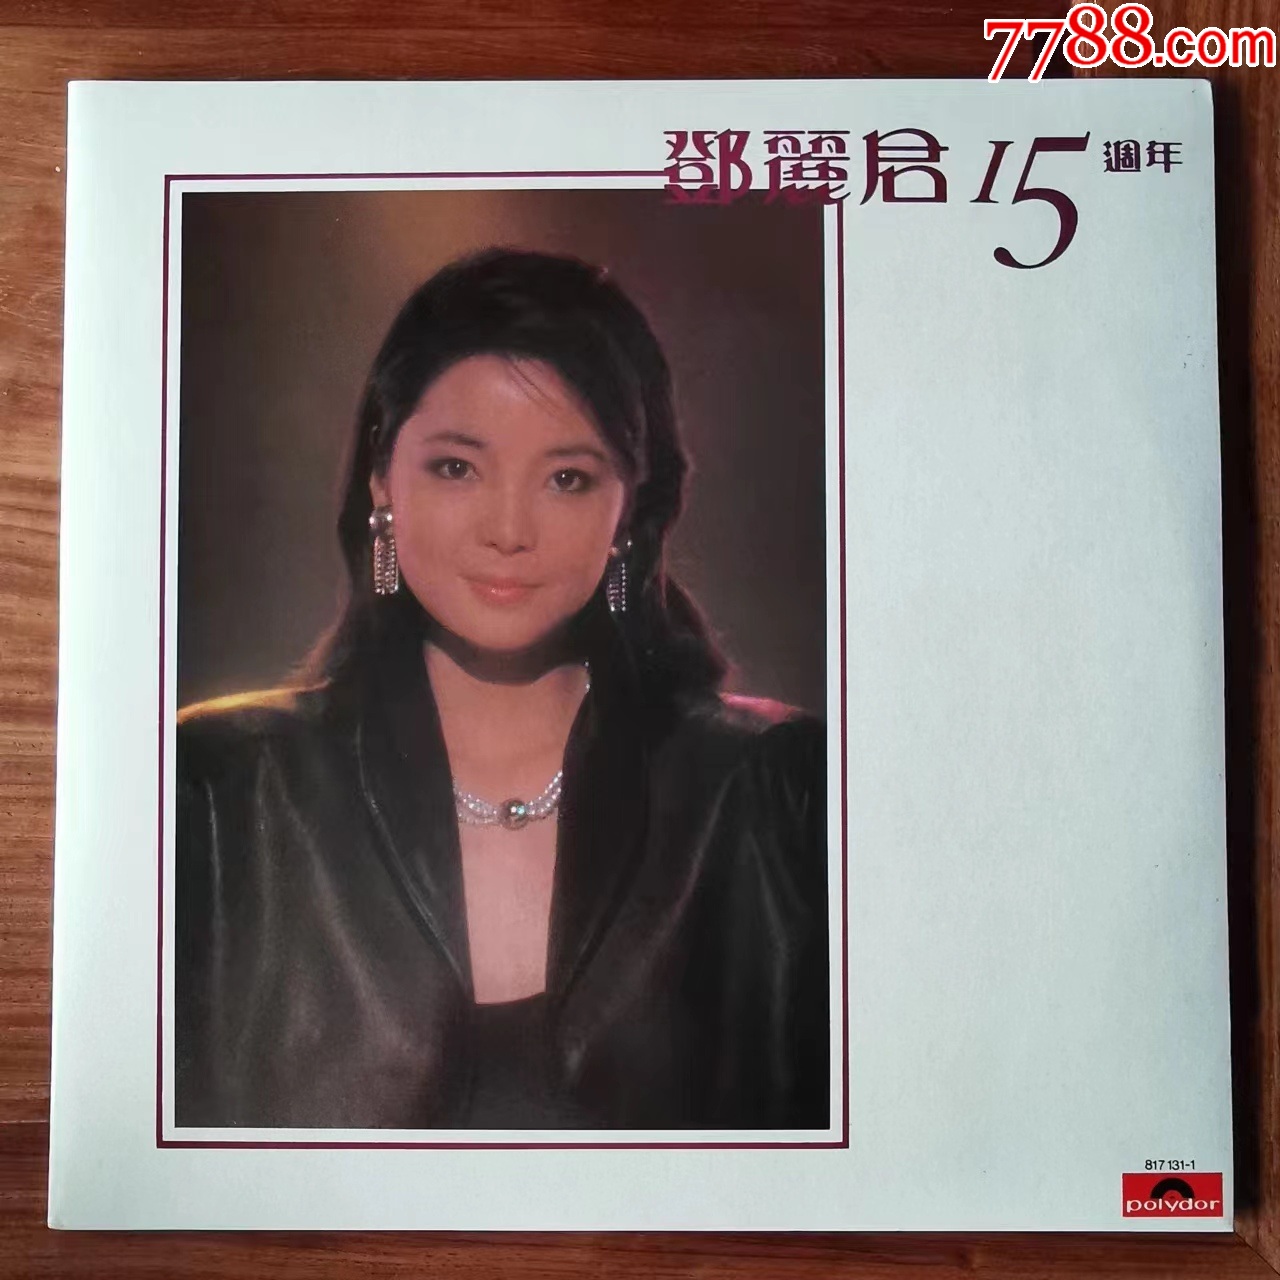 邓丽君15周年黑胶唱片2lp1983年香港首版12寸老唱片黑胶唱片天地【7788商城】 5389